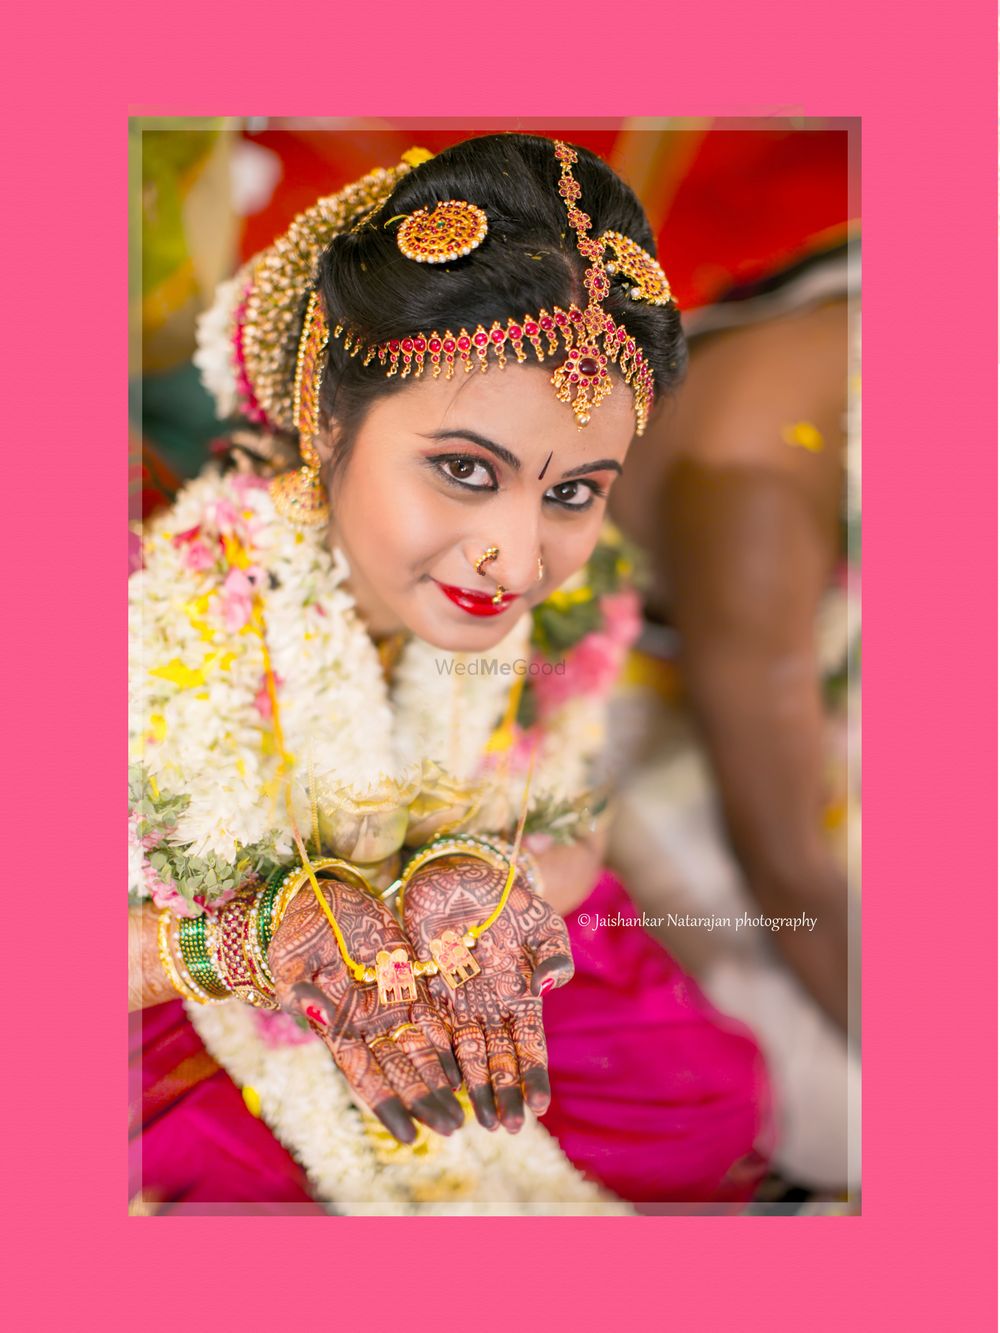 Photo From Sush Weds Siva - By Jaishankar Natarajan Photography 